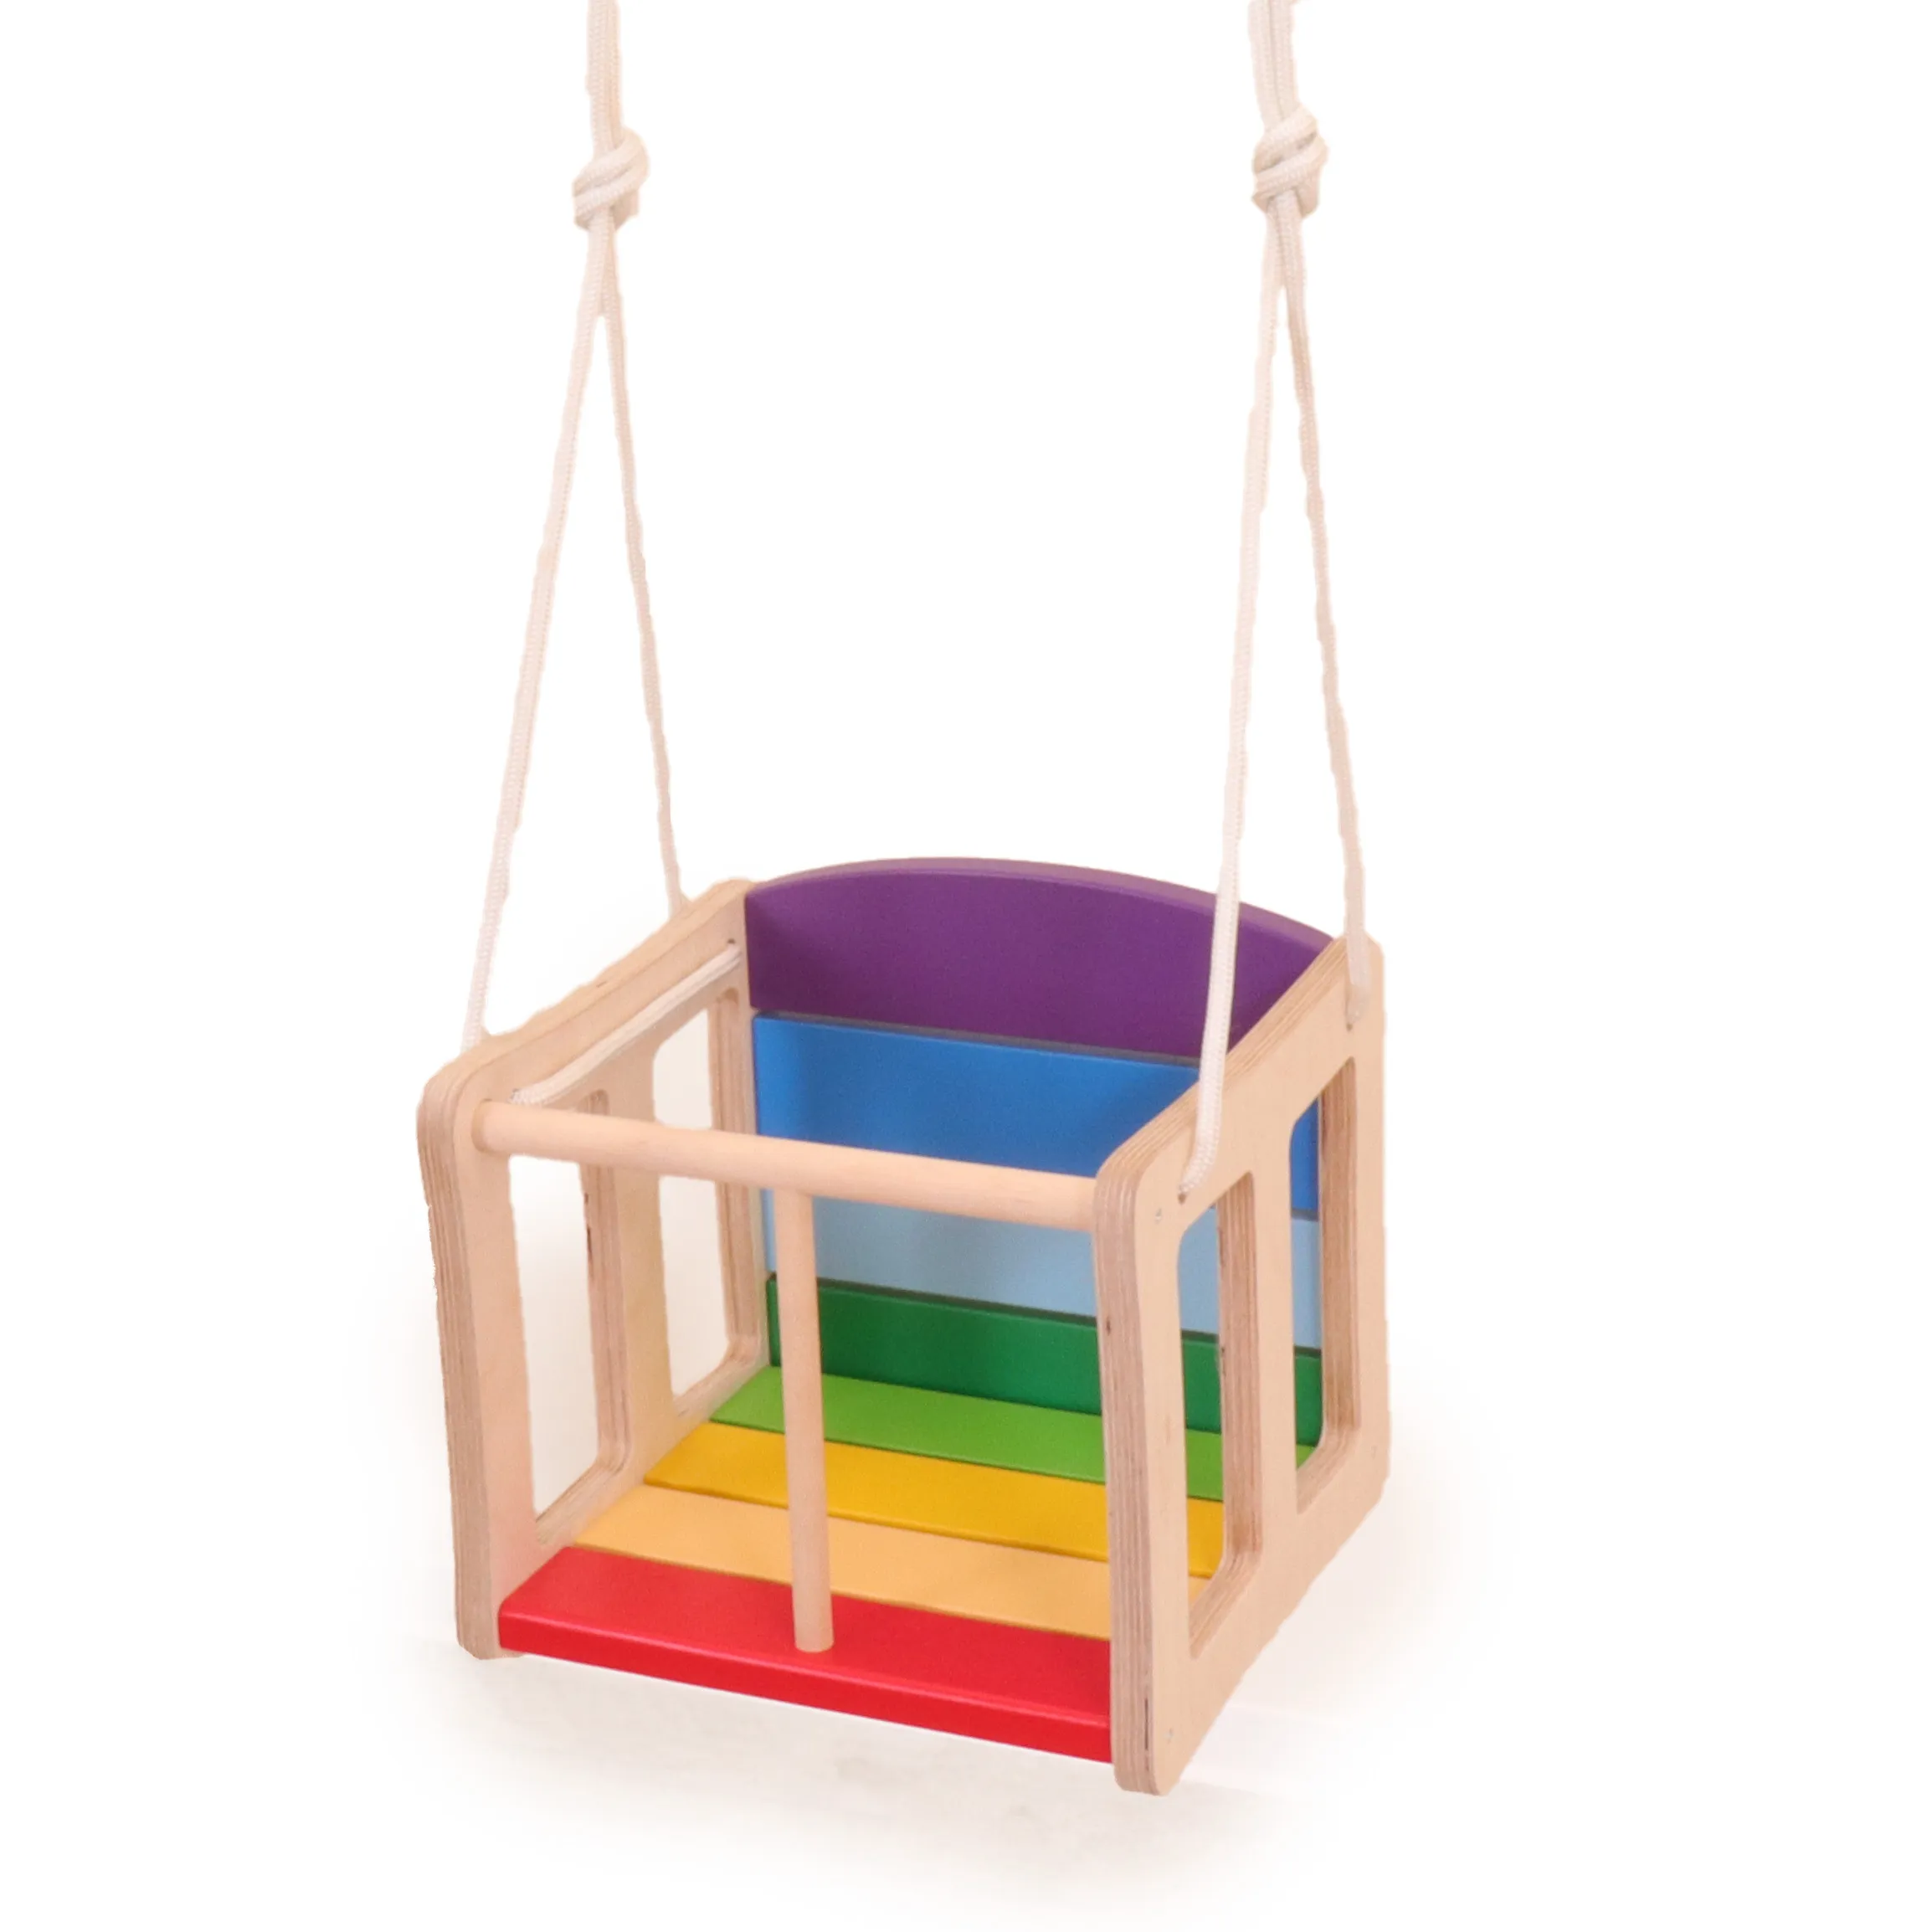 Kleinkind-Schaukel mit Sitzfläche in Regenbogenfarben gefärbten Leisten.